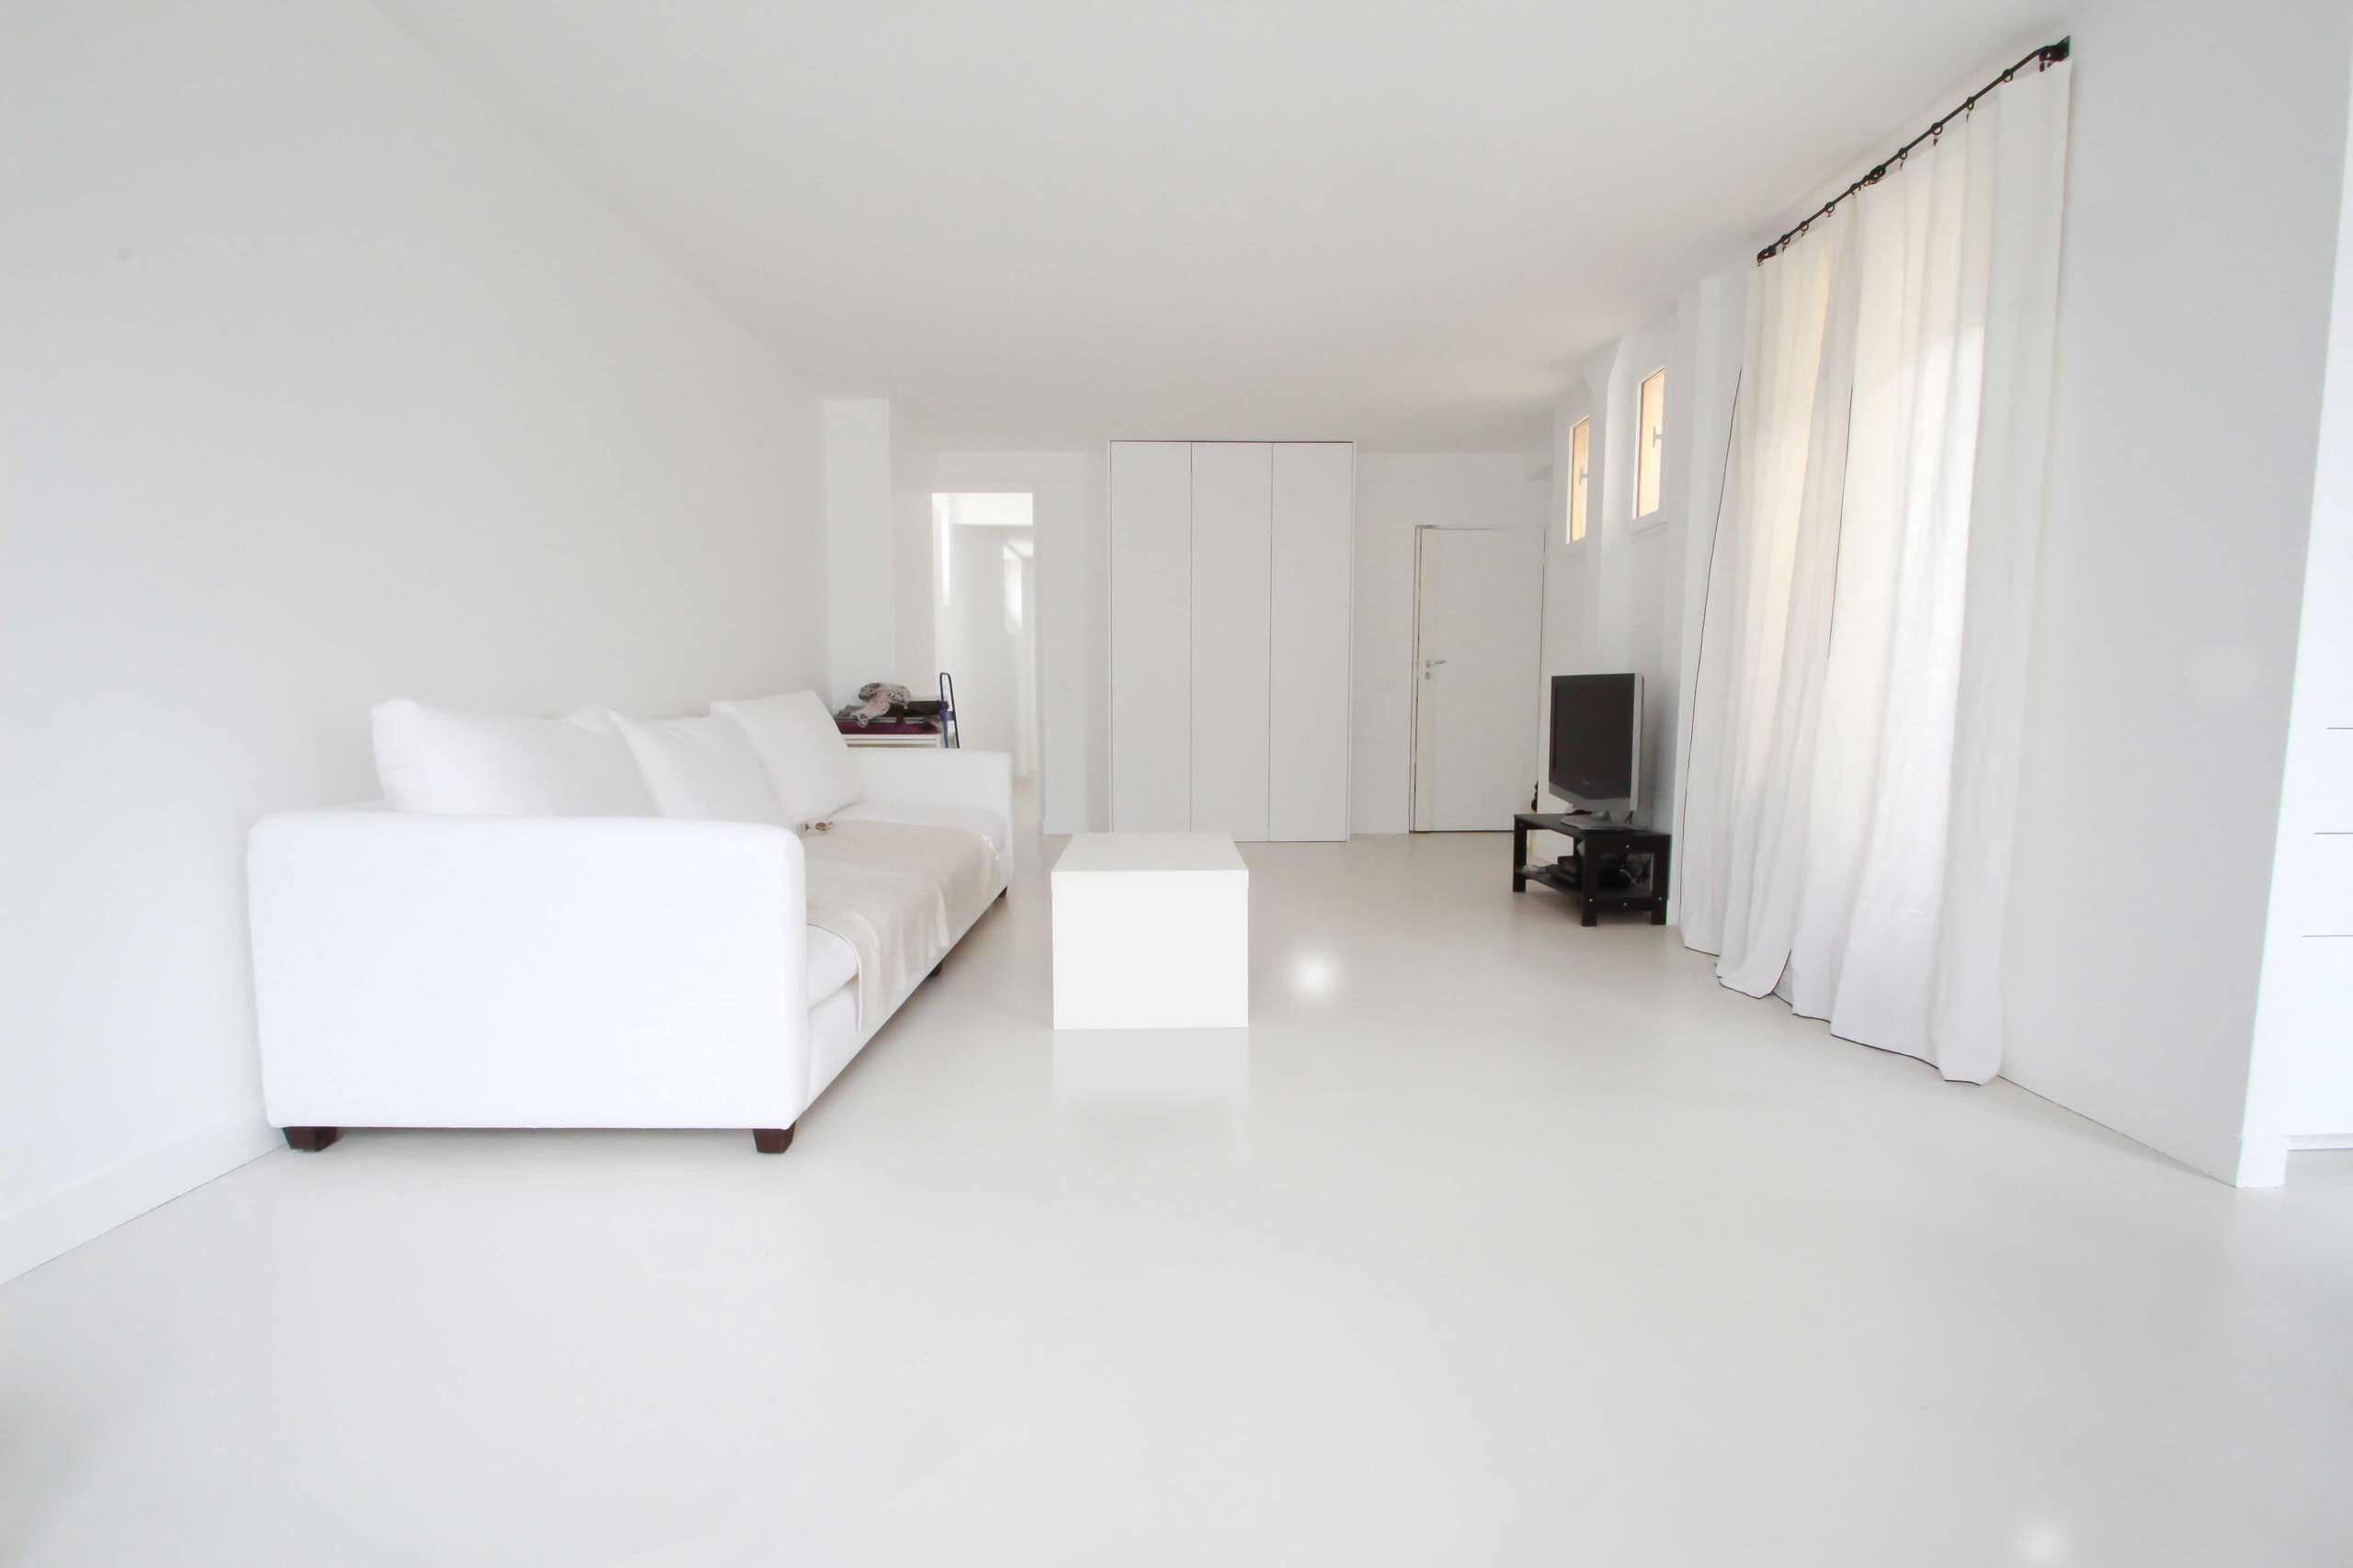 Béton ciré autolissant blanc – Appartement privé - Family Room - Paris - by  DÉCAUM - béton ciré | Houzz